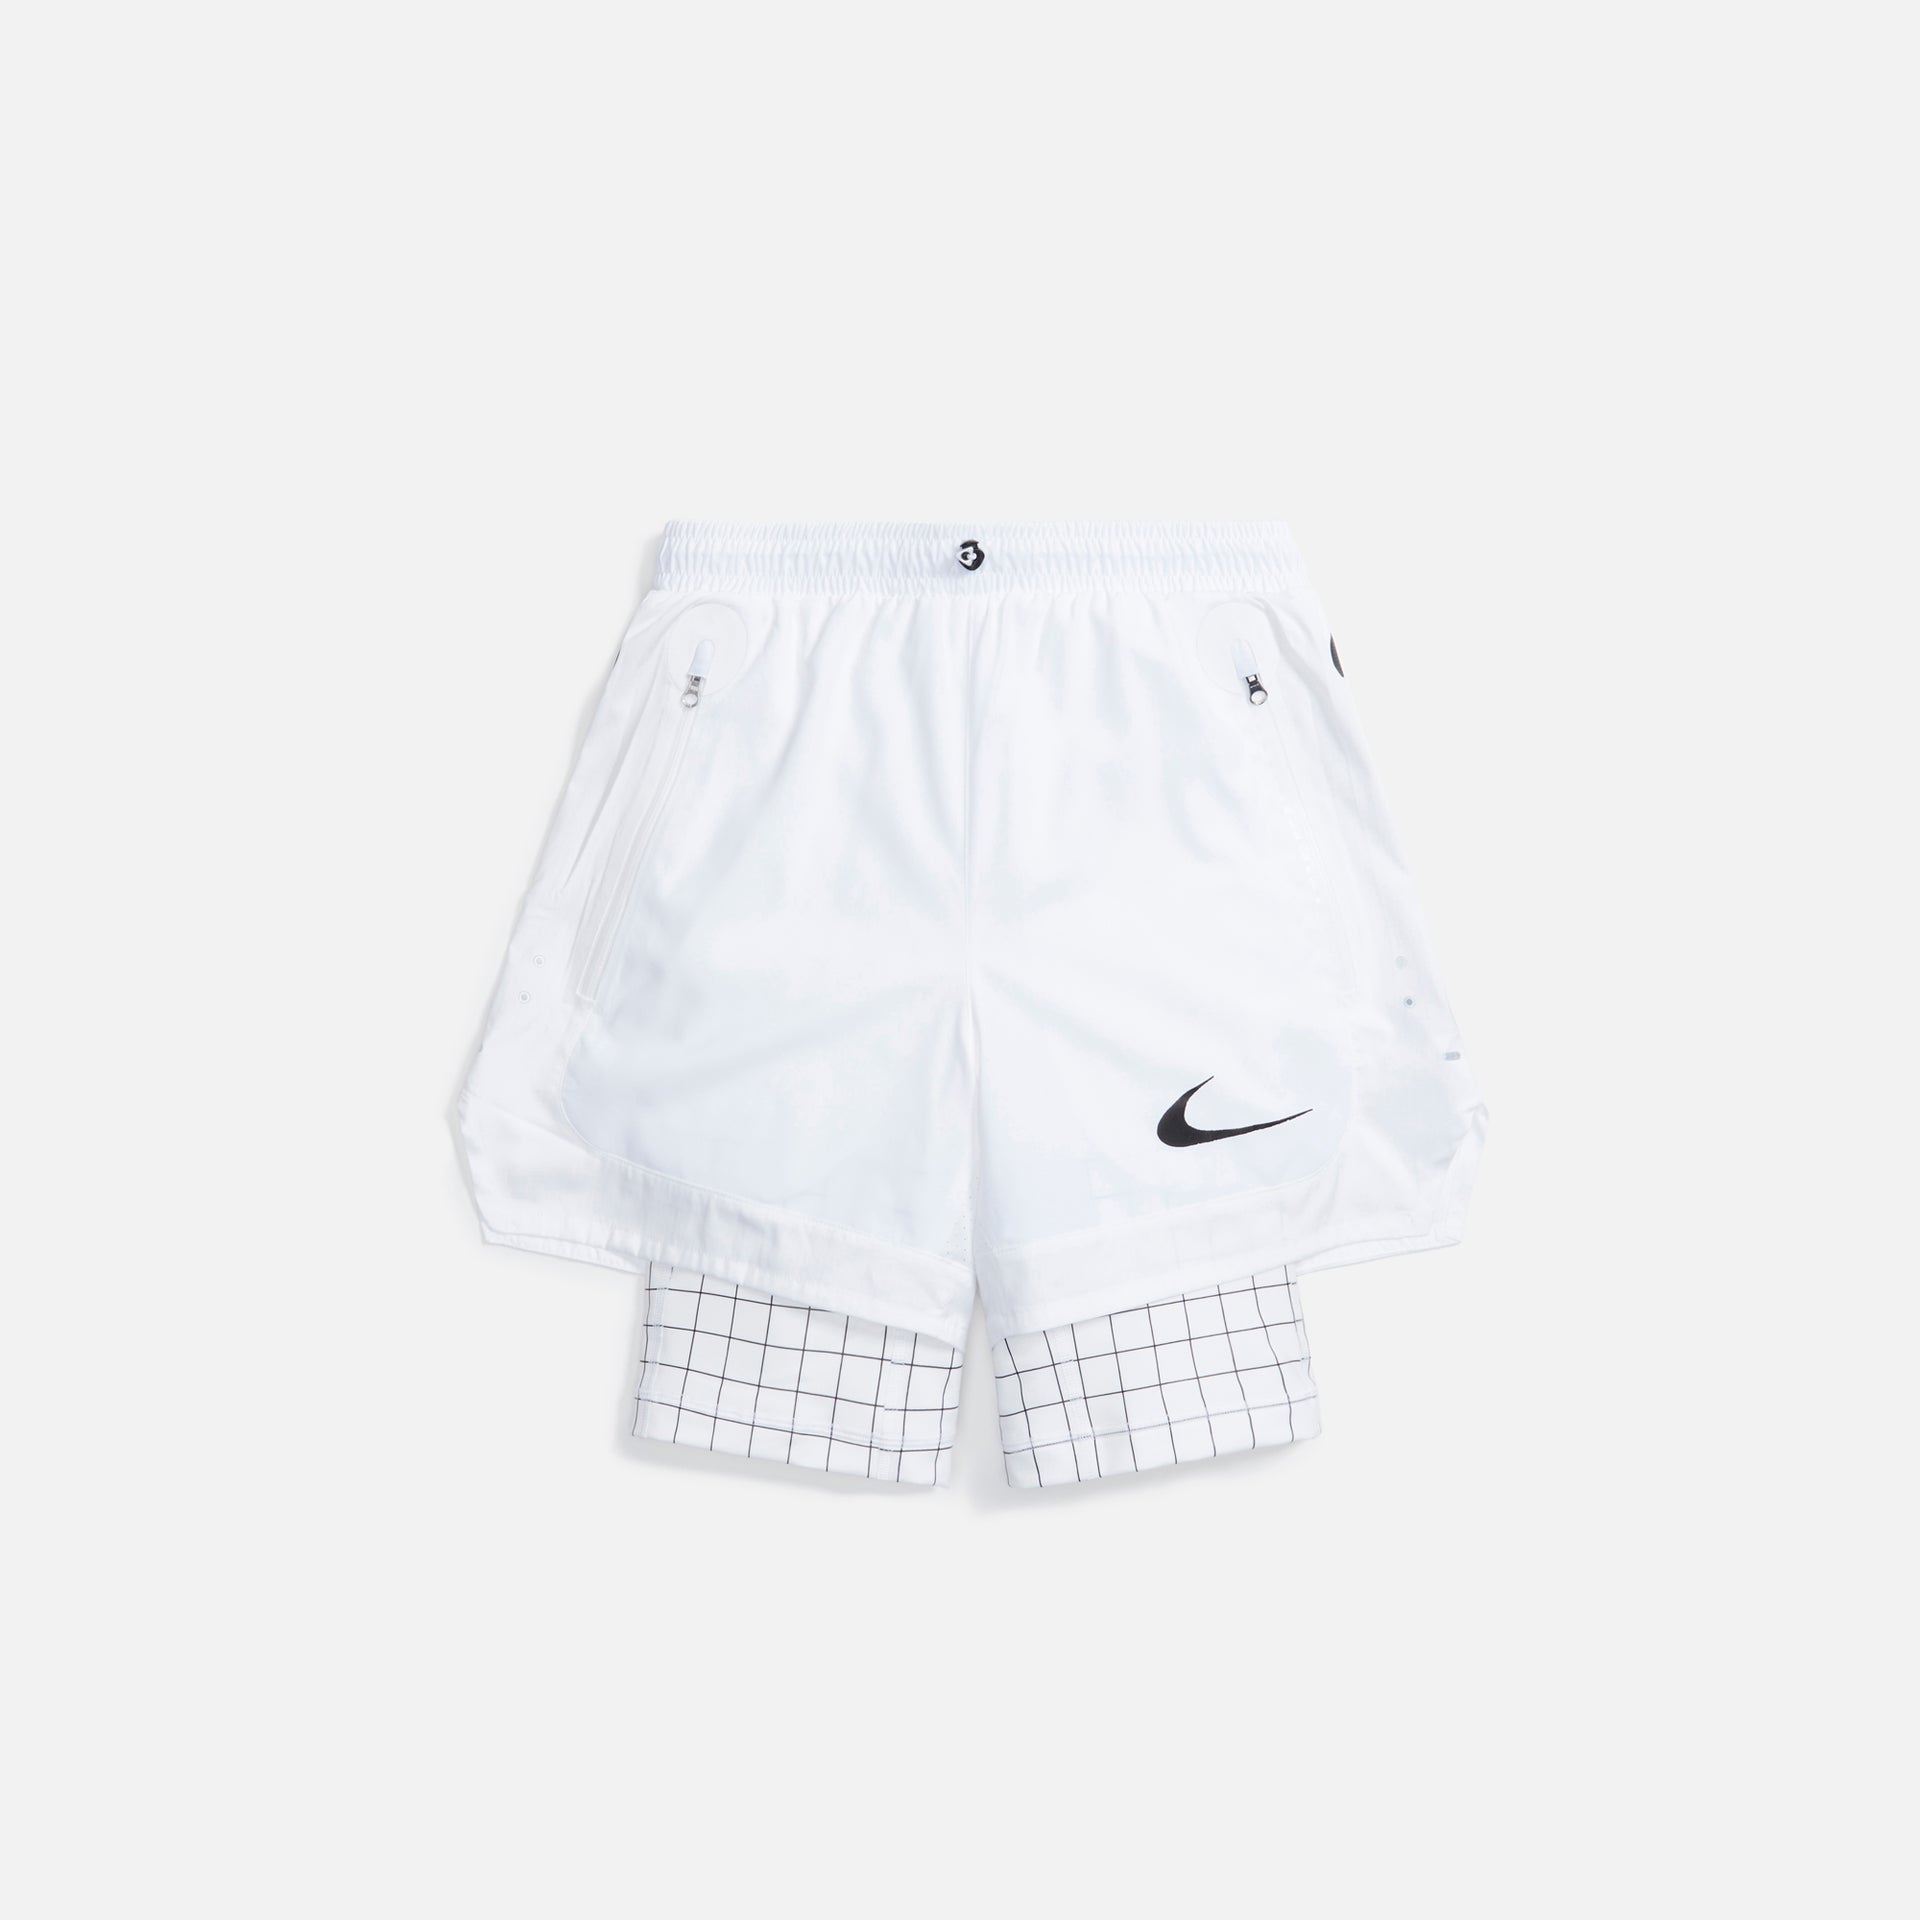 Nike x Off-White Short - White